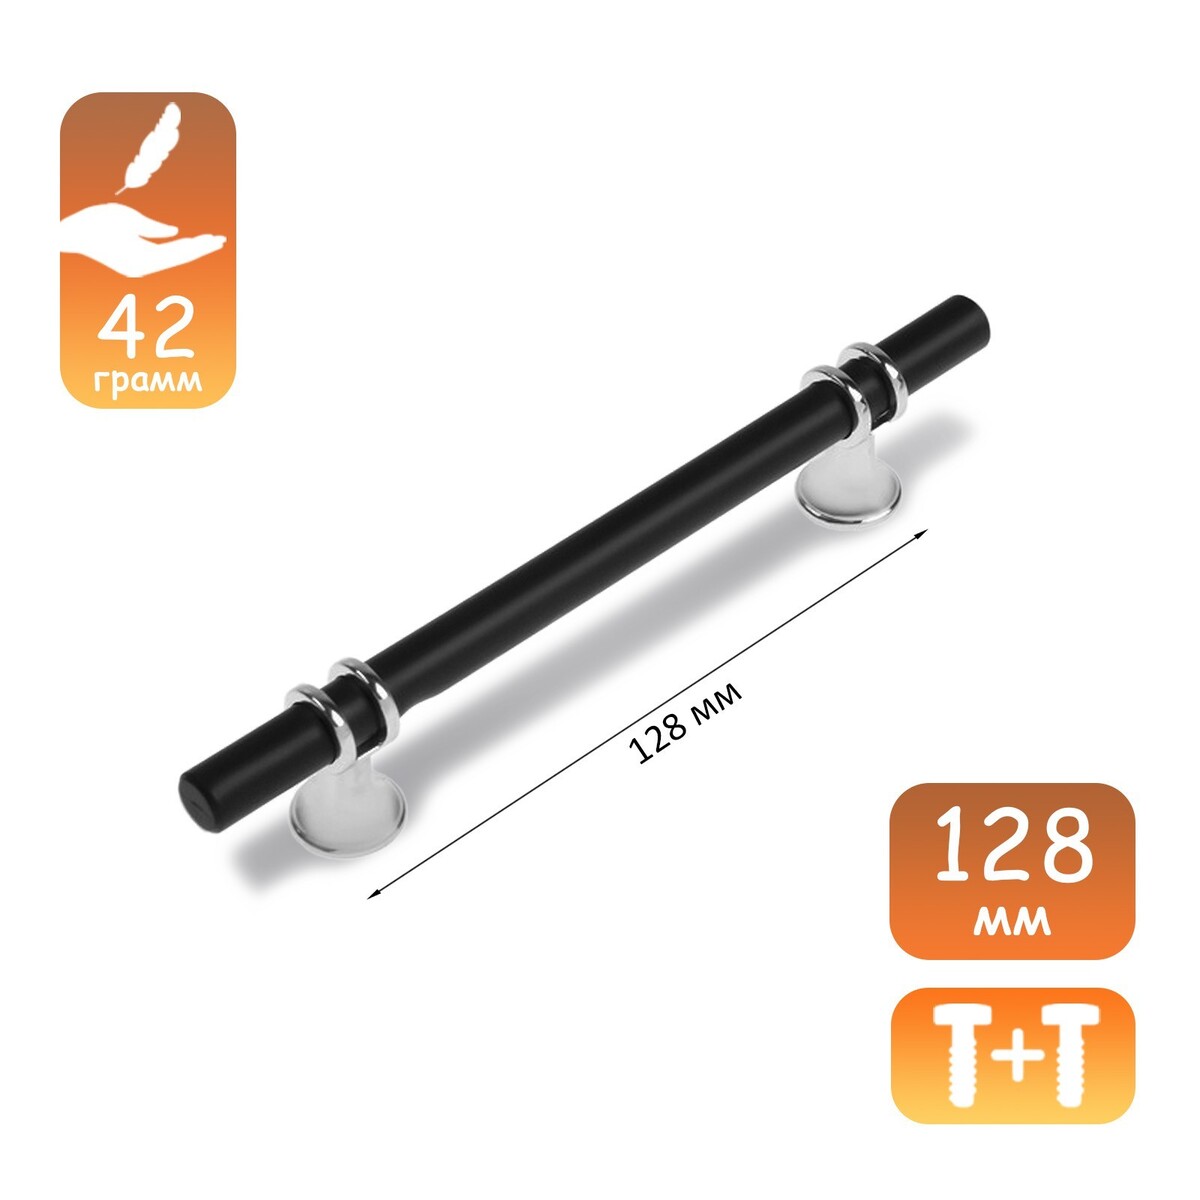 Ручка скоба cappio, м/о 128 мм, d=12 mm, пластик, цвет хром/черный серьги пластик